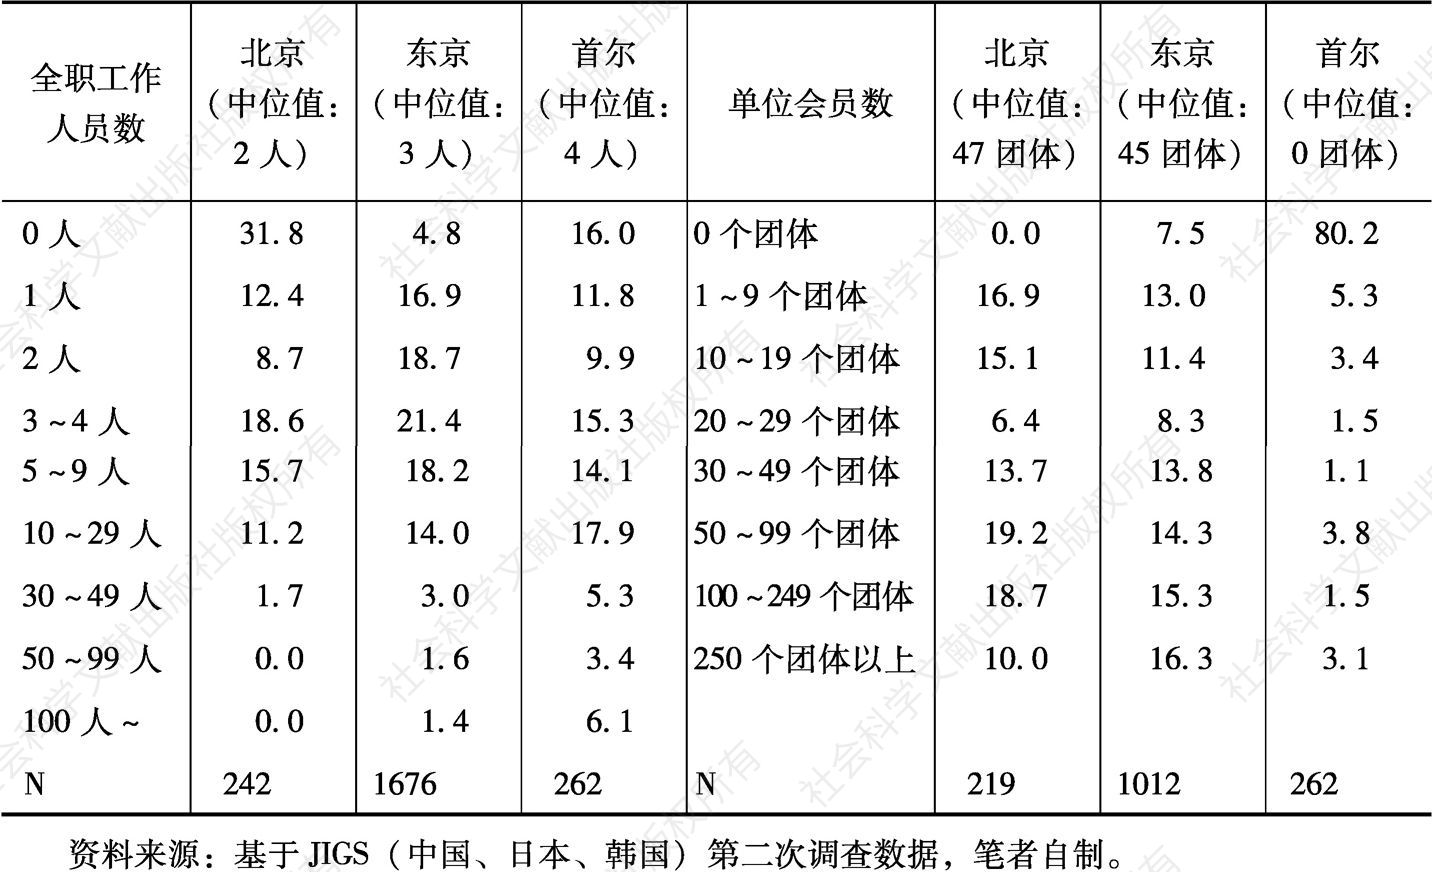 表4-3 中日韩社团的全职工作人员数、单位会员数